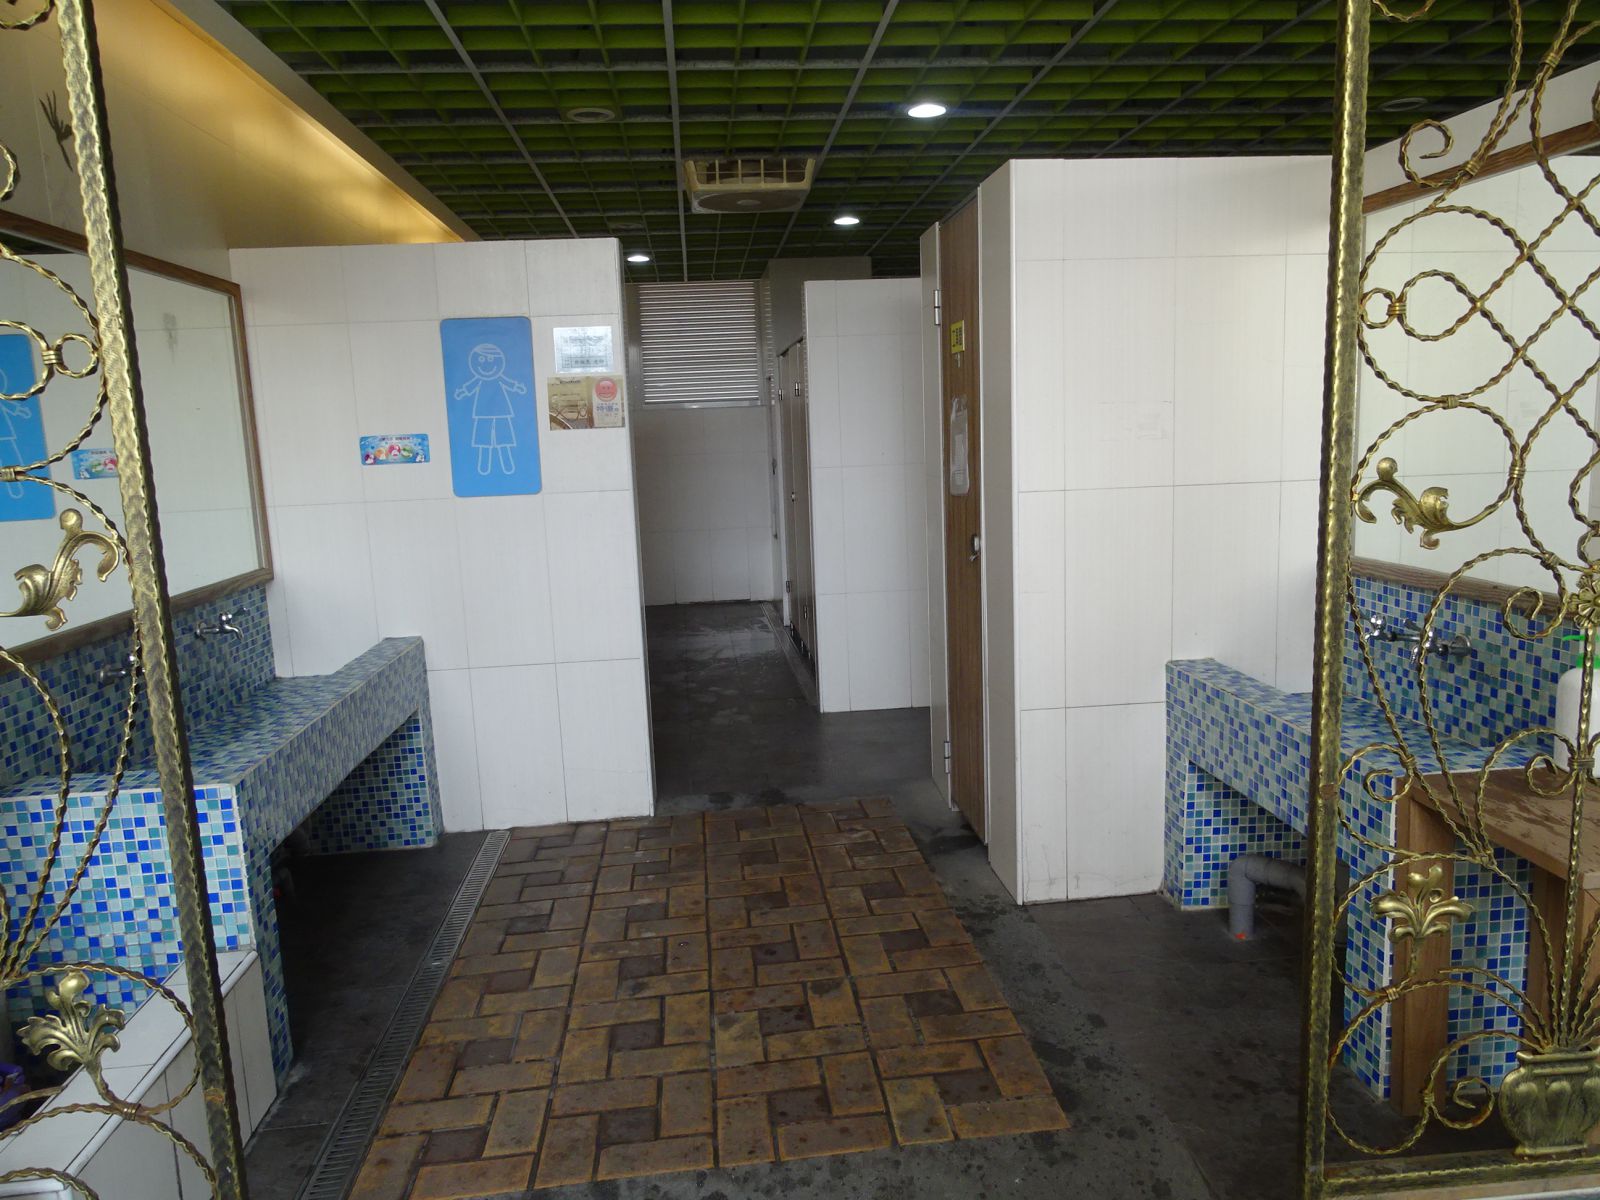 教室走廊兩端廁所皆配置有洗手台方便師生使用